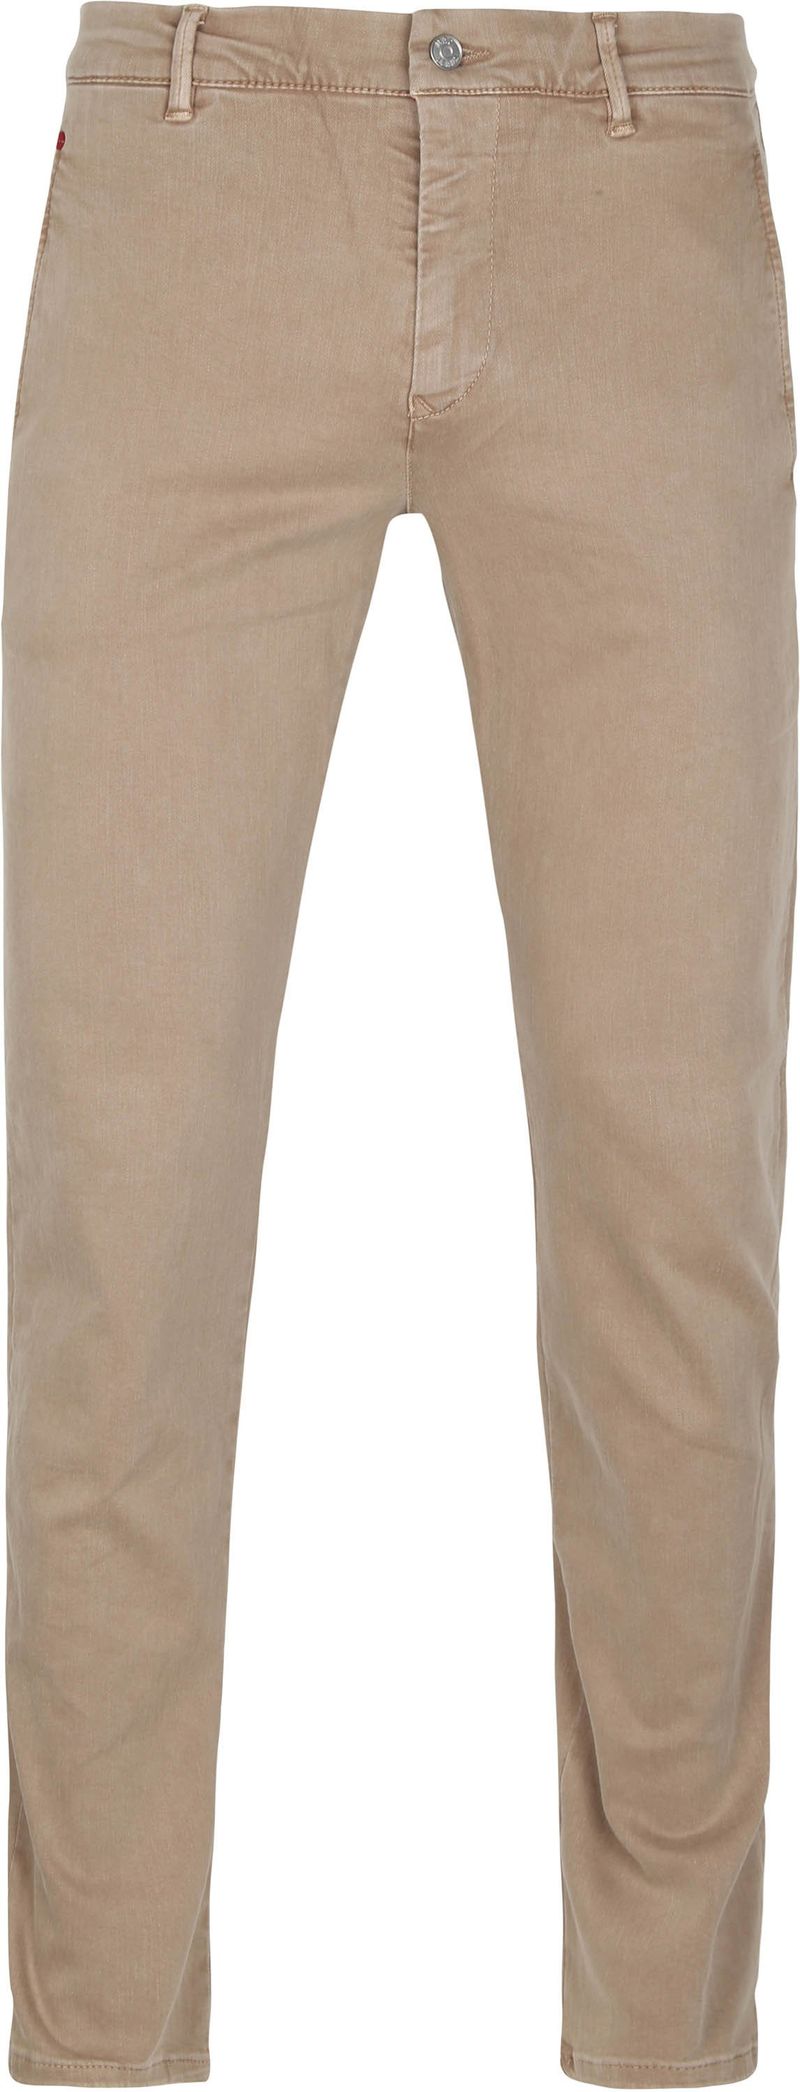 Mac Jeans Driver Pants Flexx Beige - Größe W 31 - L 34 von MAC